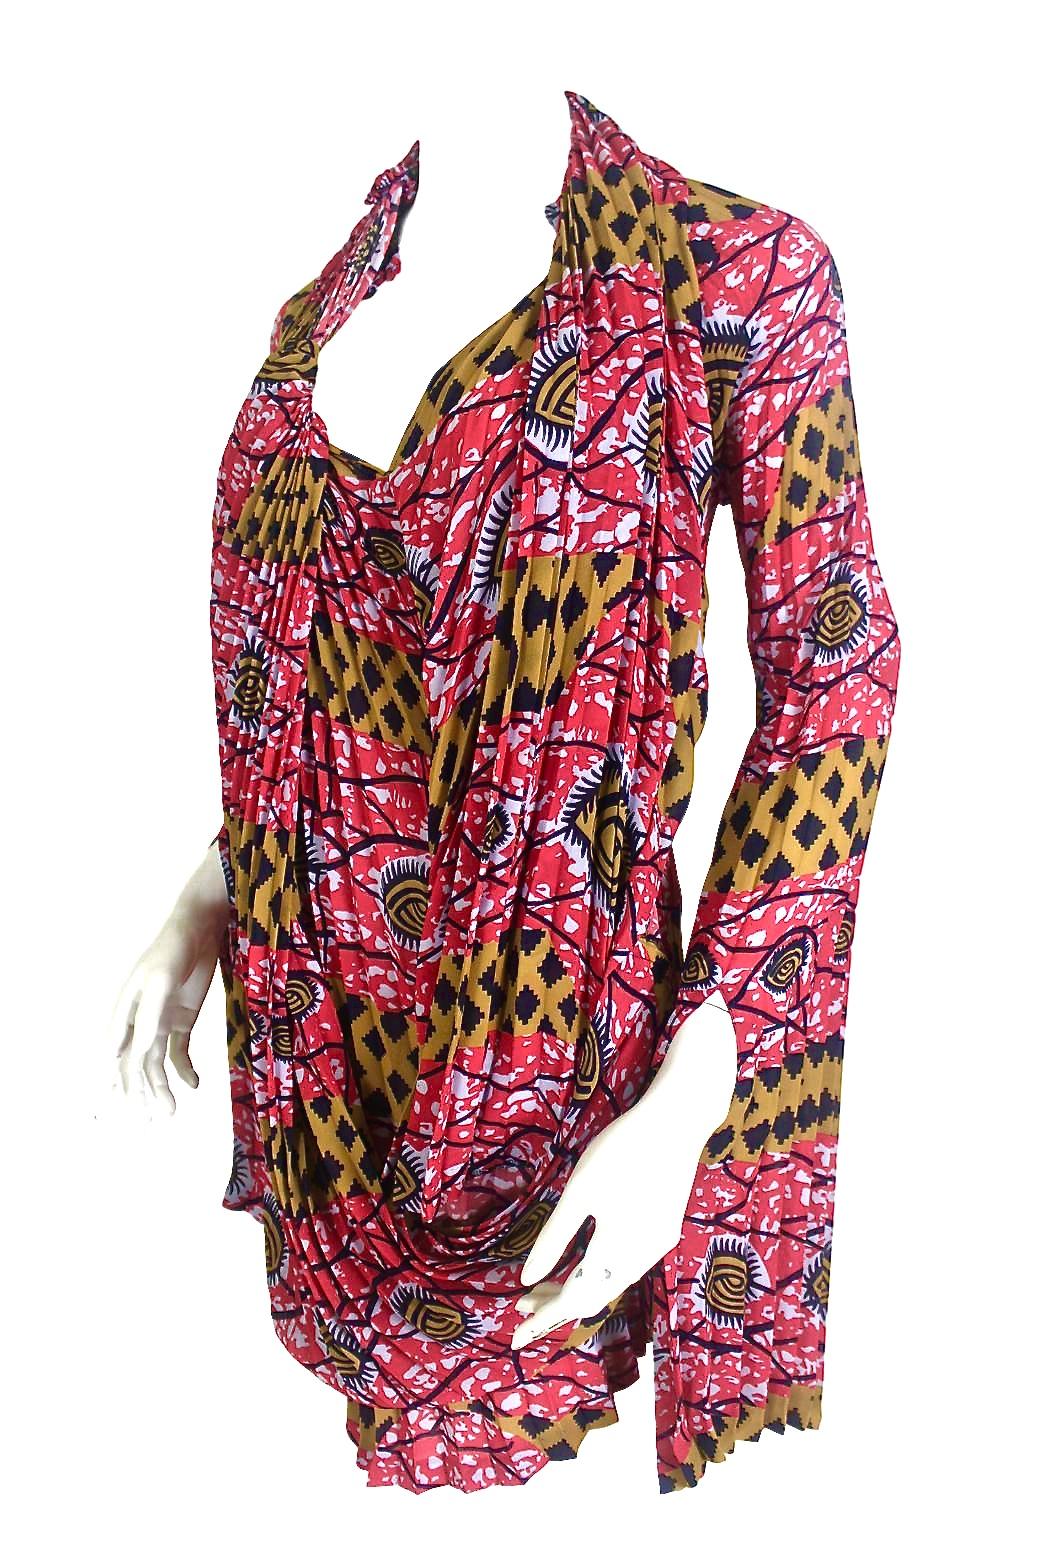 Comme des Garçons Junya Watanabe African Open Back Print Dress AD 2009 For Sale 1